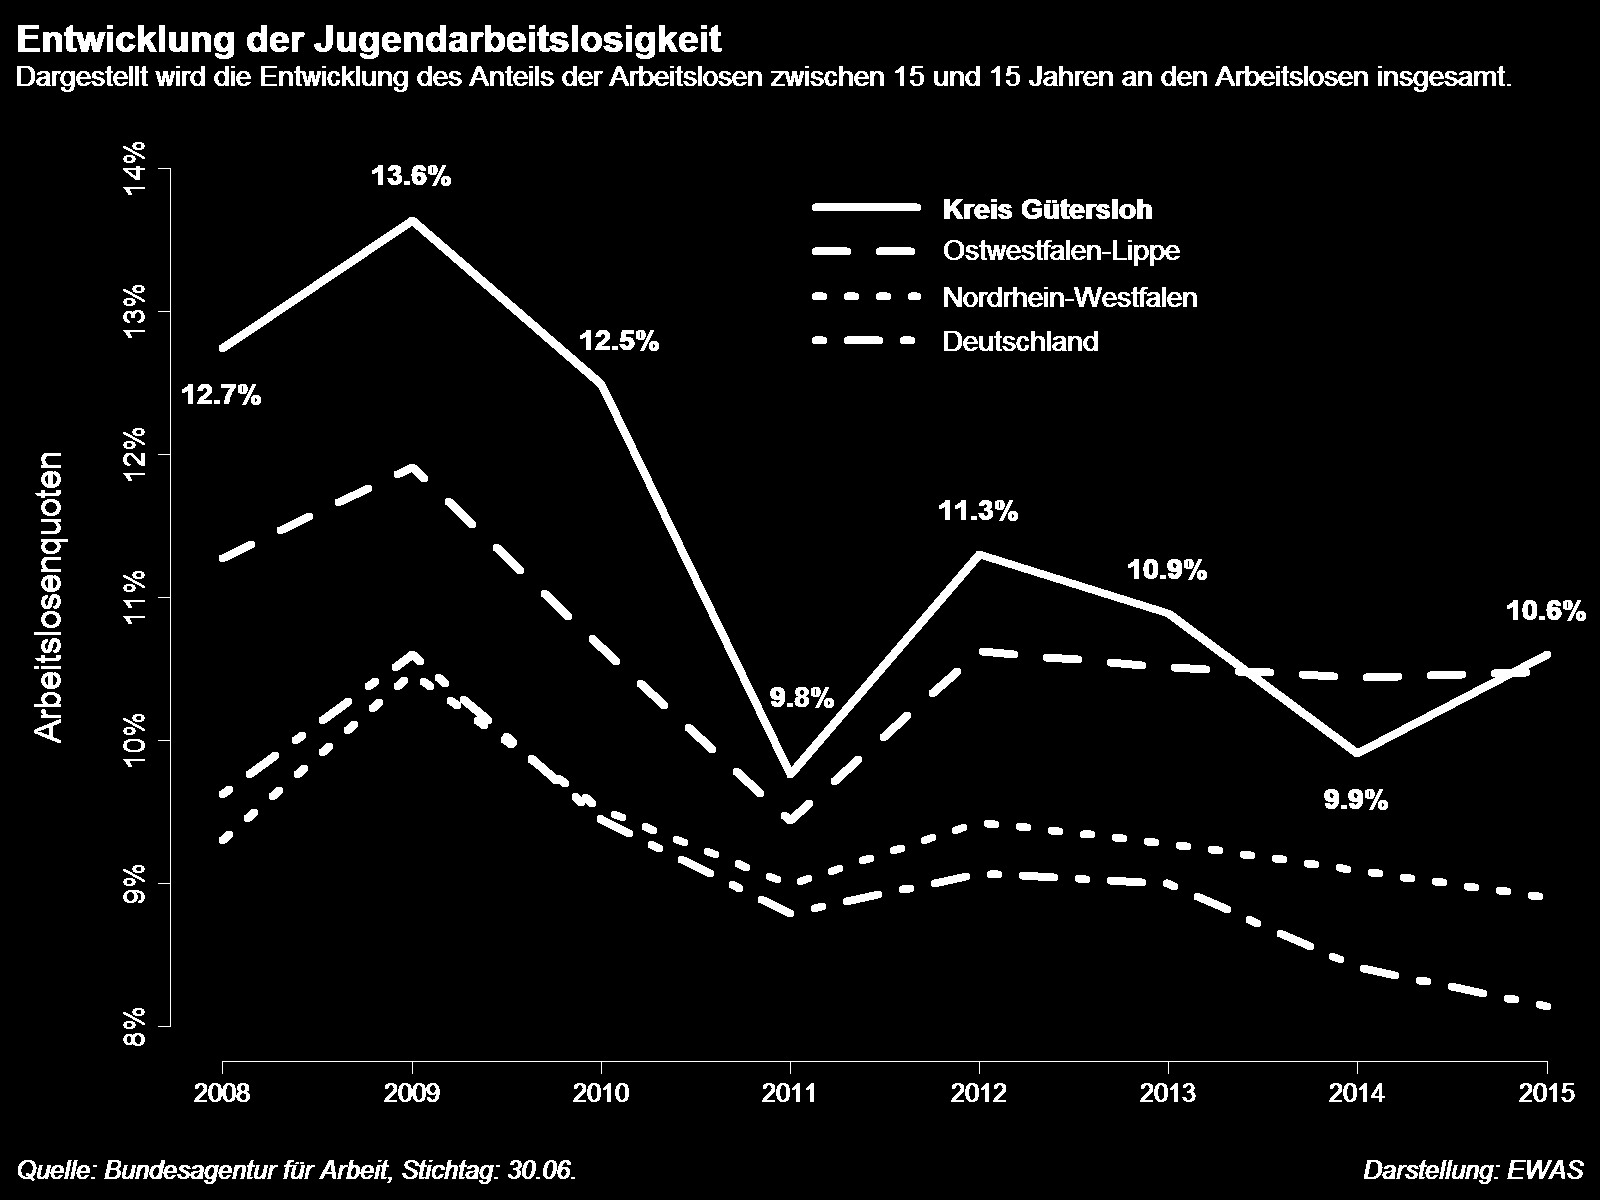 Kreis Gütersloh Ostwestfalen-Lippe Nordrhein-Westfalen Deutschland 2008 12,7% 11,3% 9,3% 9,6% 2009 13,6% 11,9% 10,5% 10,6% 2010 12,5% 10,7% 9,5% 9,5% 2011 9,8% 9,4% 9,0% 8,8% 2012 11,3% 10,6% 9,4%